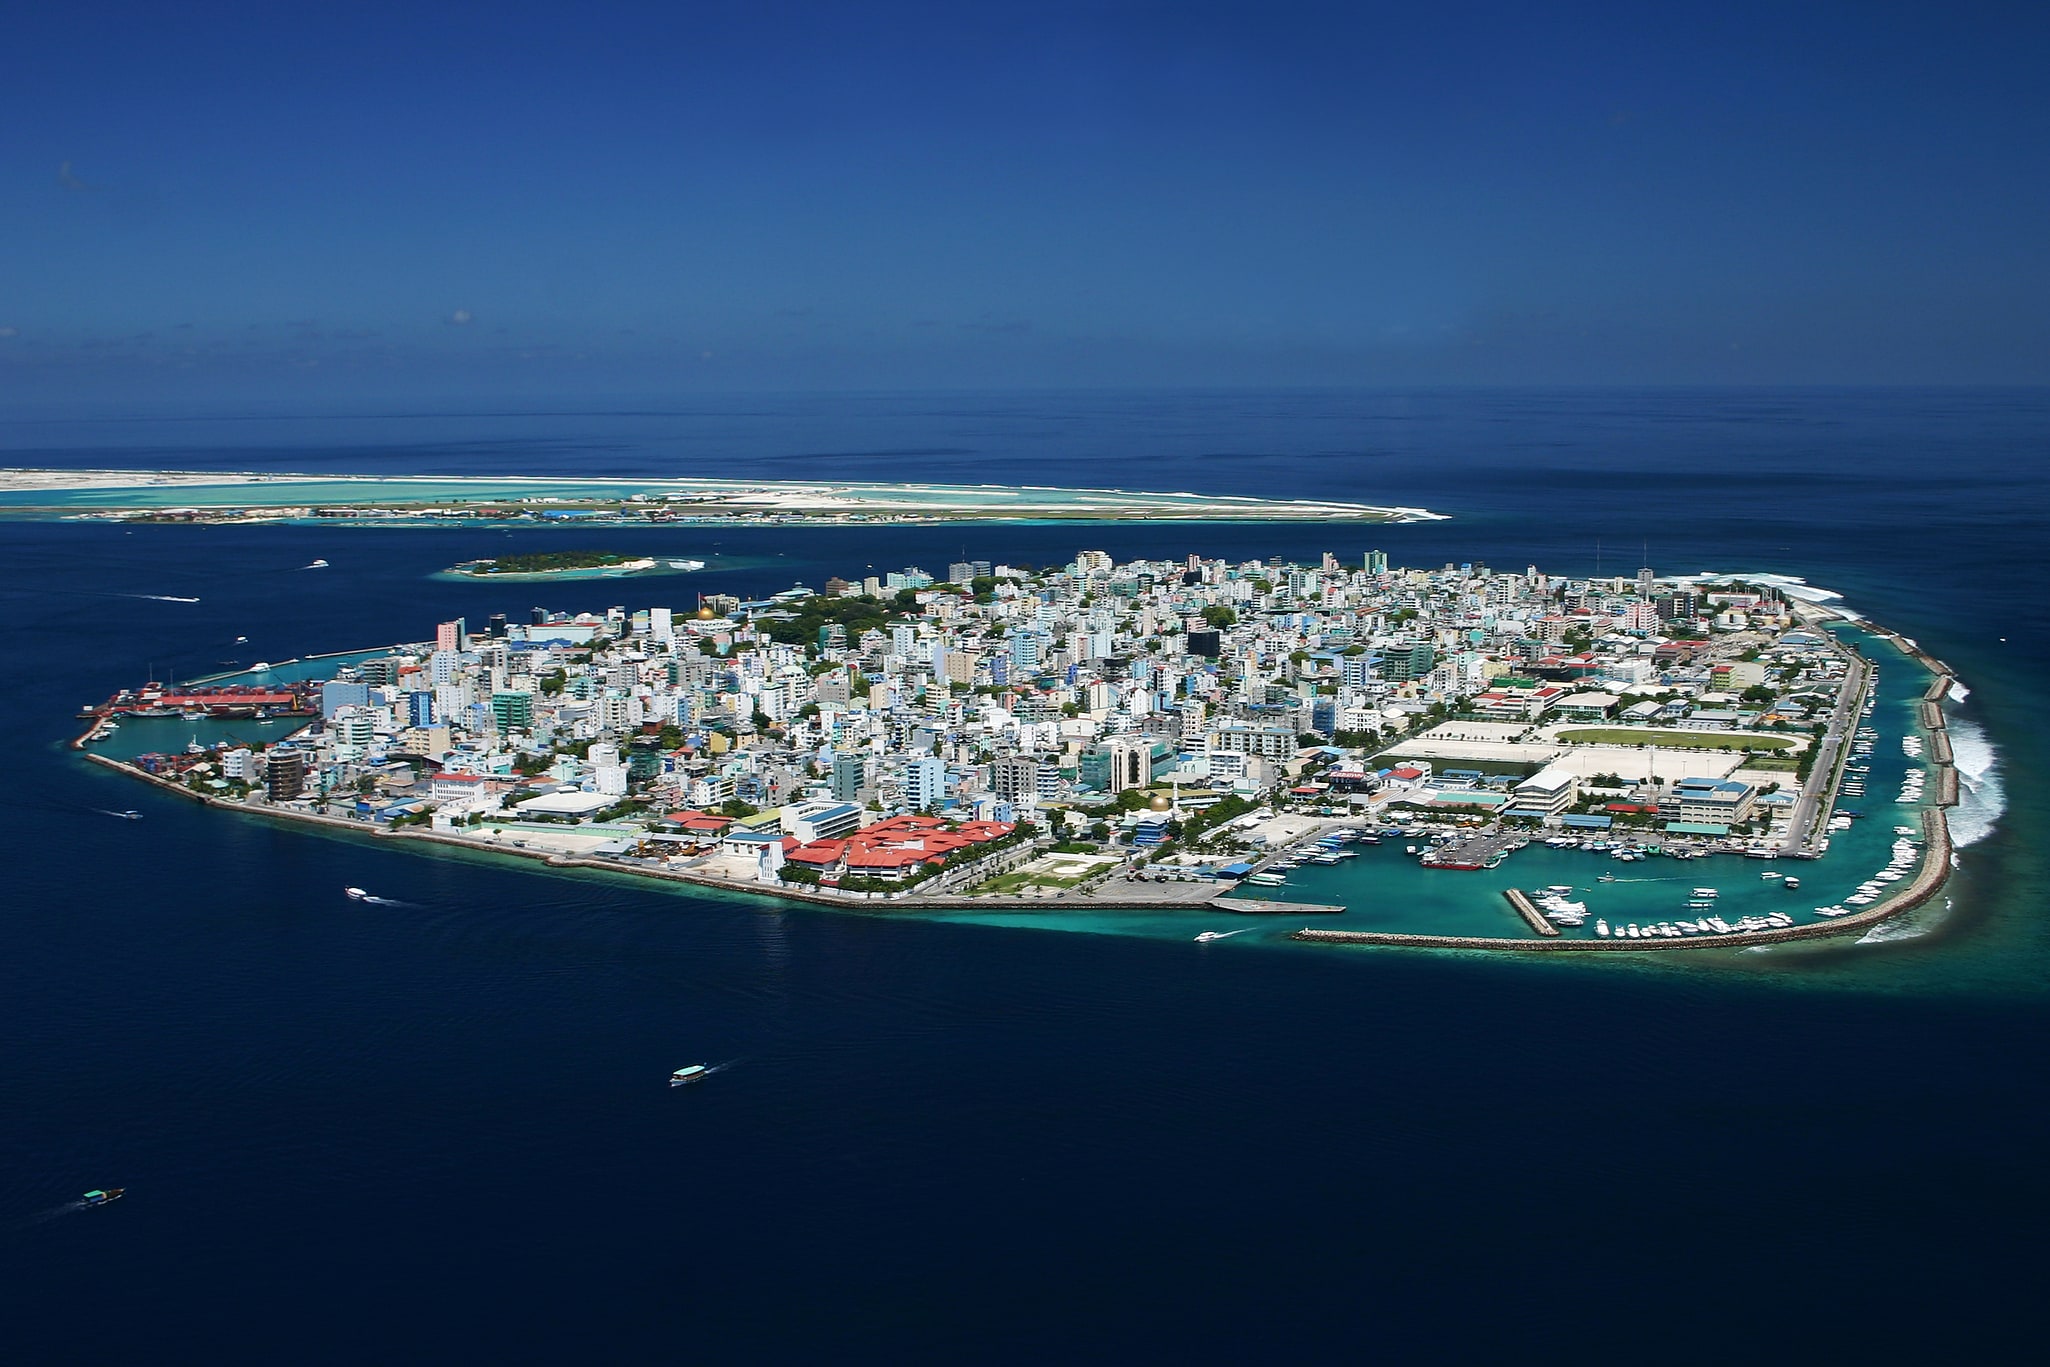 Malé, Maldivas